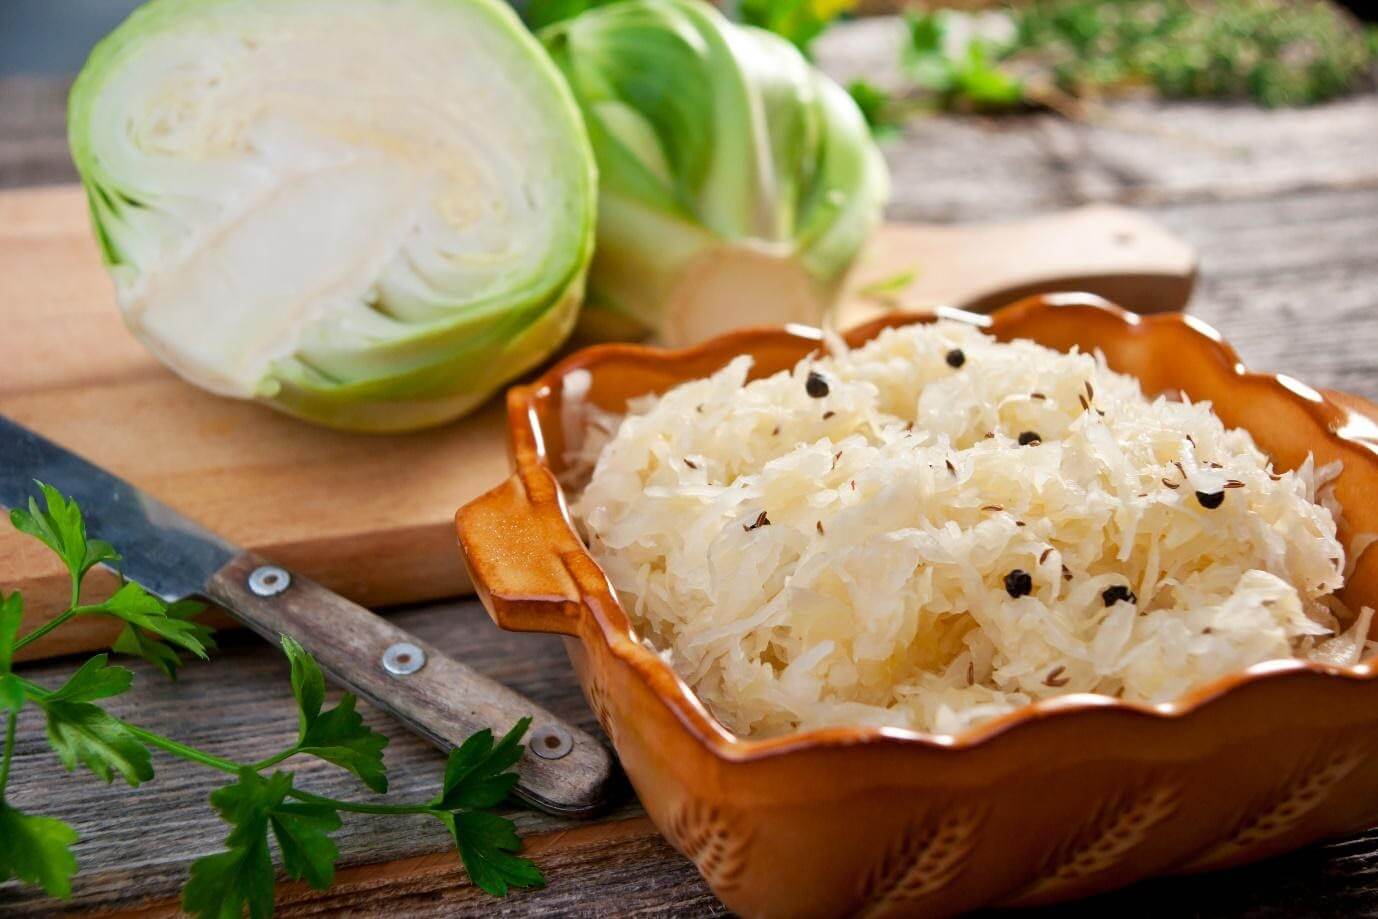 sauerkraut - fermented food